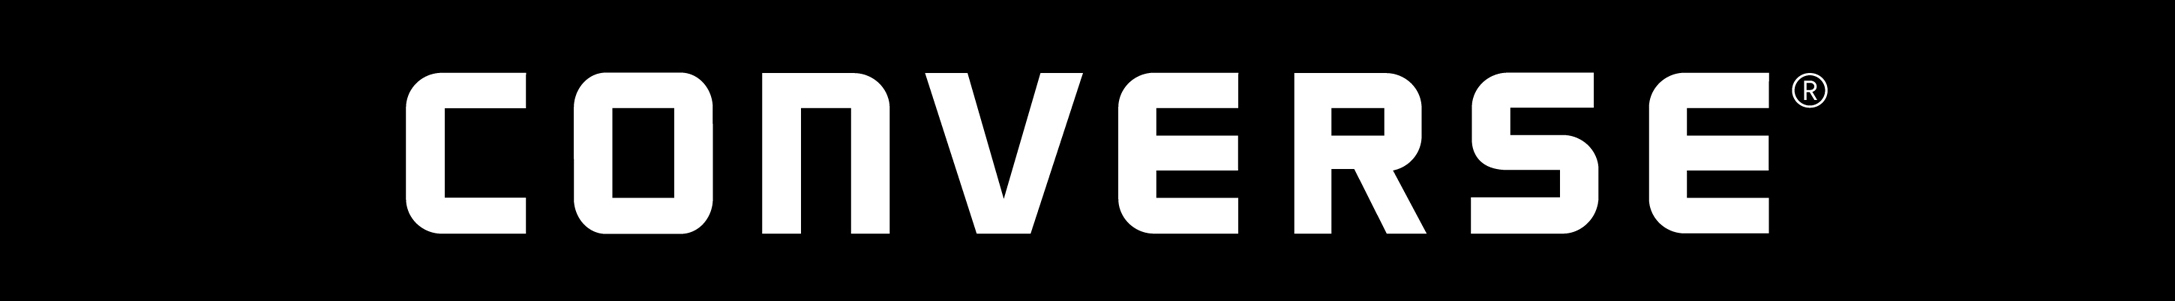 CONVERSE-logos-V-3